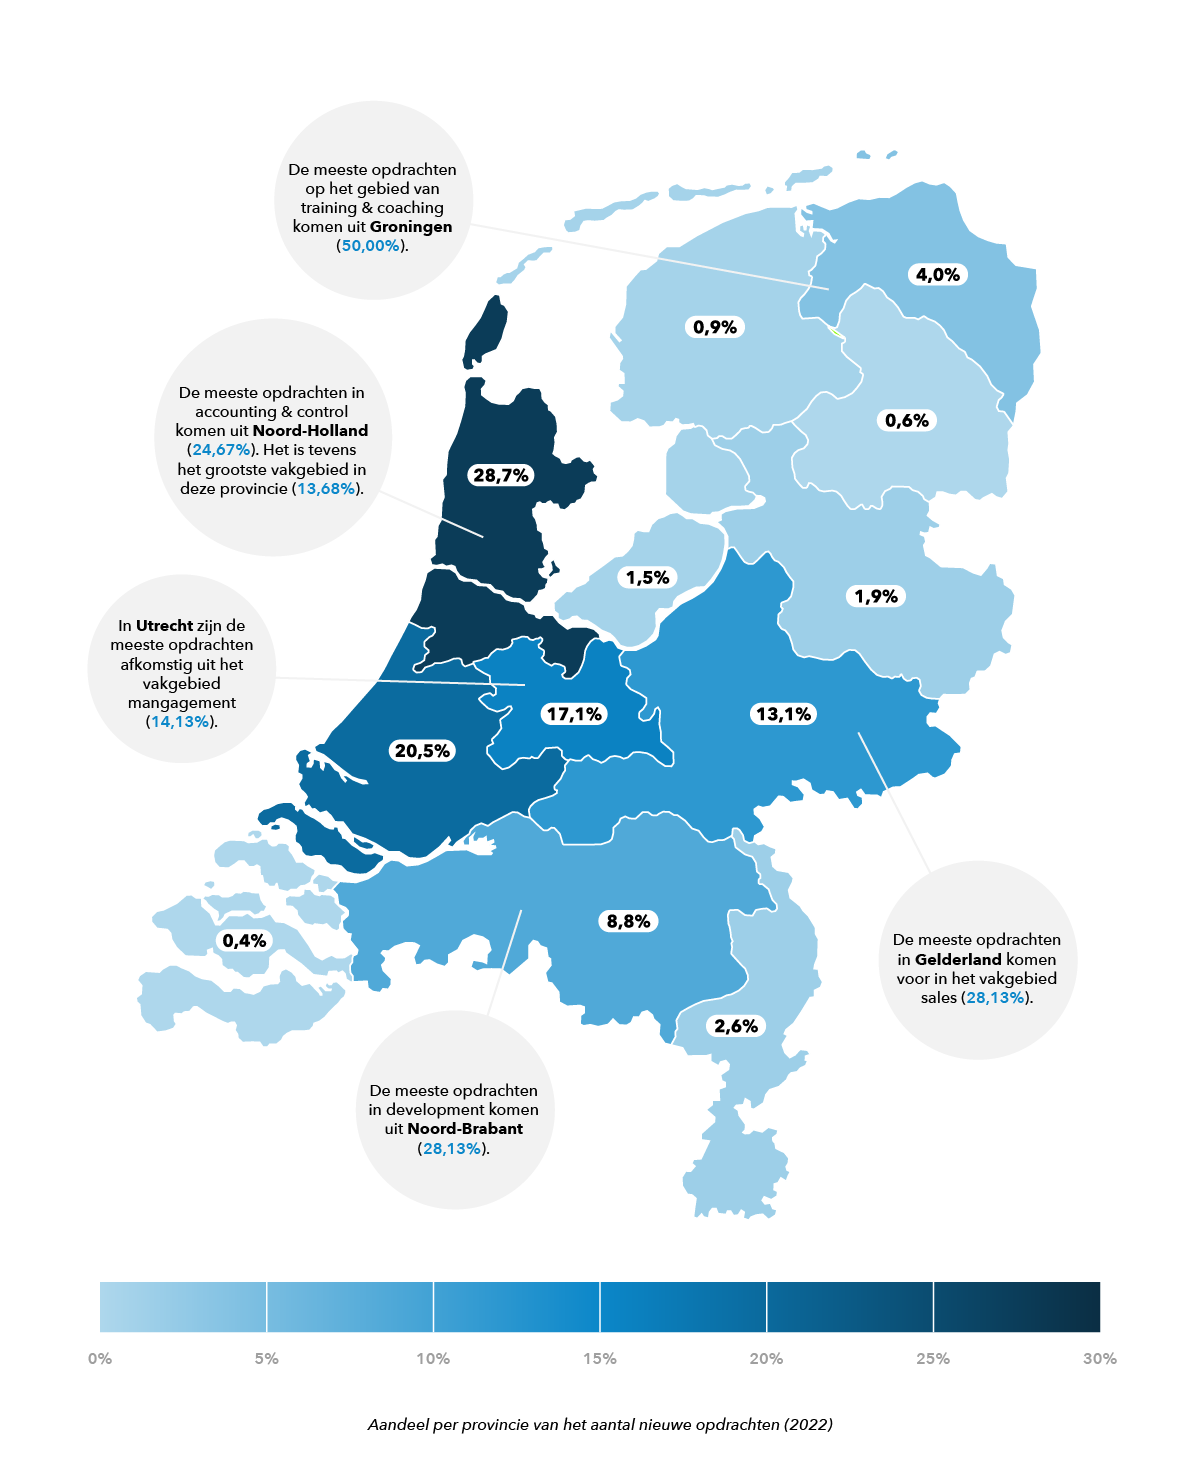 Opdrachtgevers van freelance opdrachten in Nederland in 2022